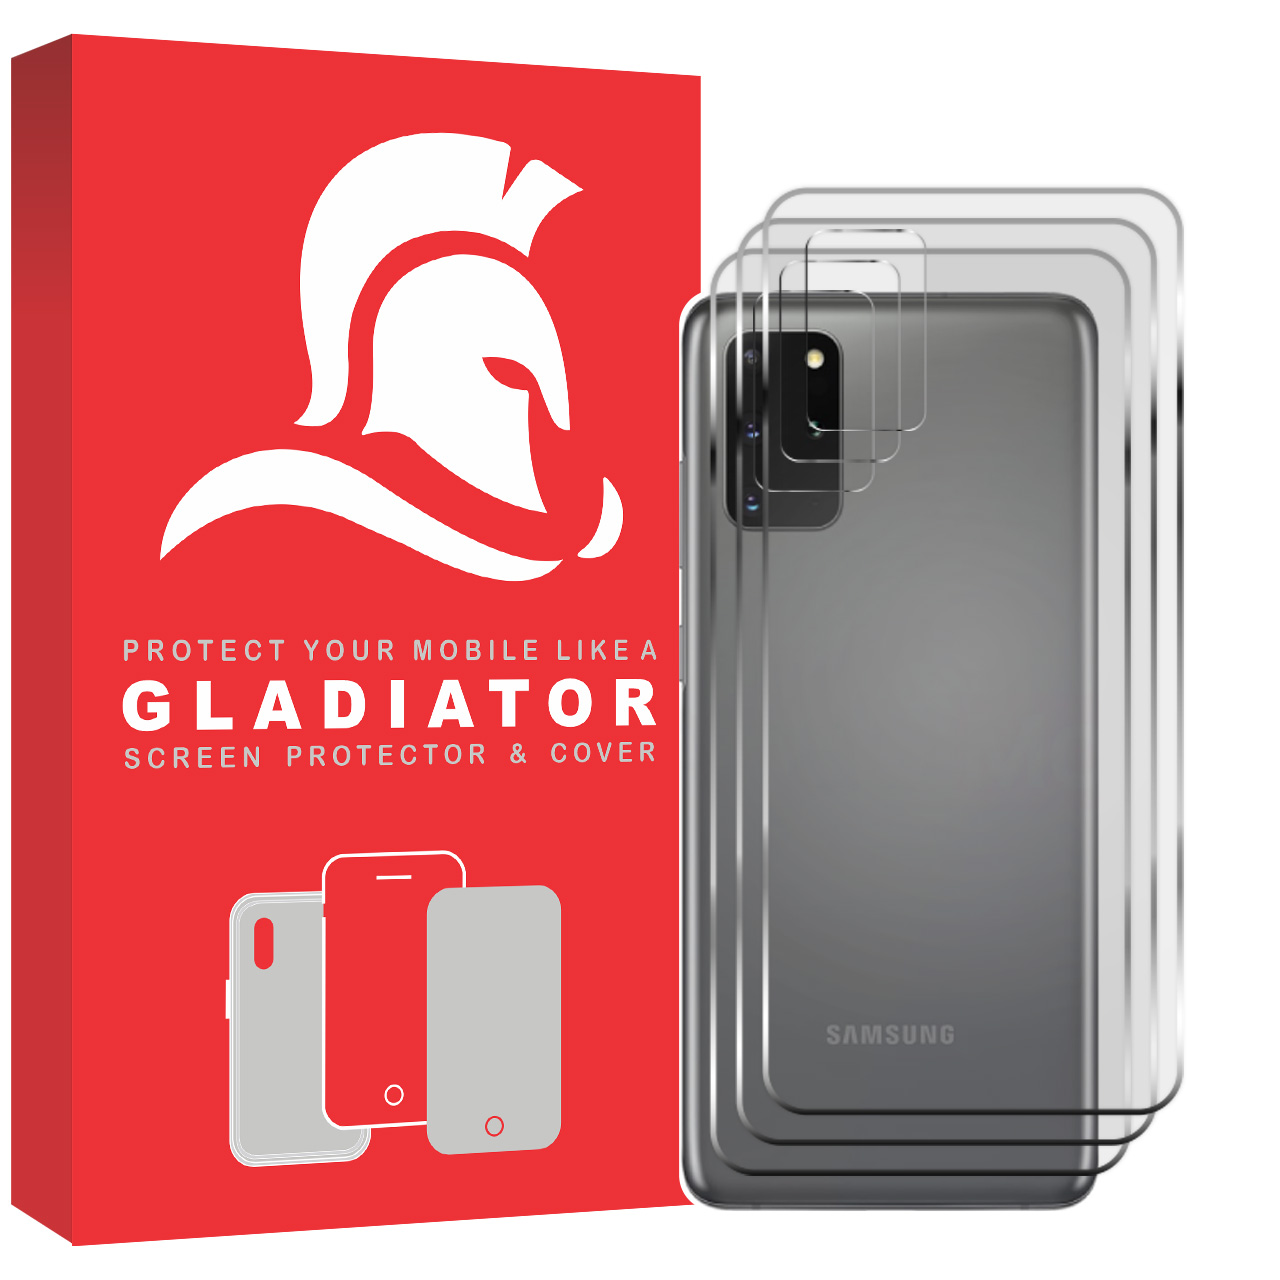 نقد و بررسی محافظ پشت گوشی گلادیاتور مدل GBC3000 مناسب برای گوشی موبایل سامسونگ Galaxy S20 Plus بسته سه عددی توسط خریداران